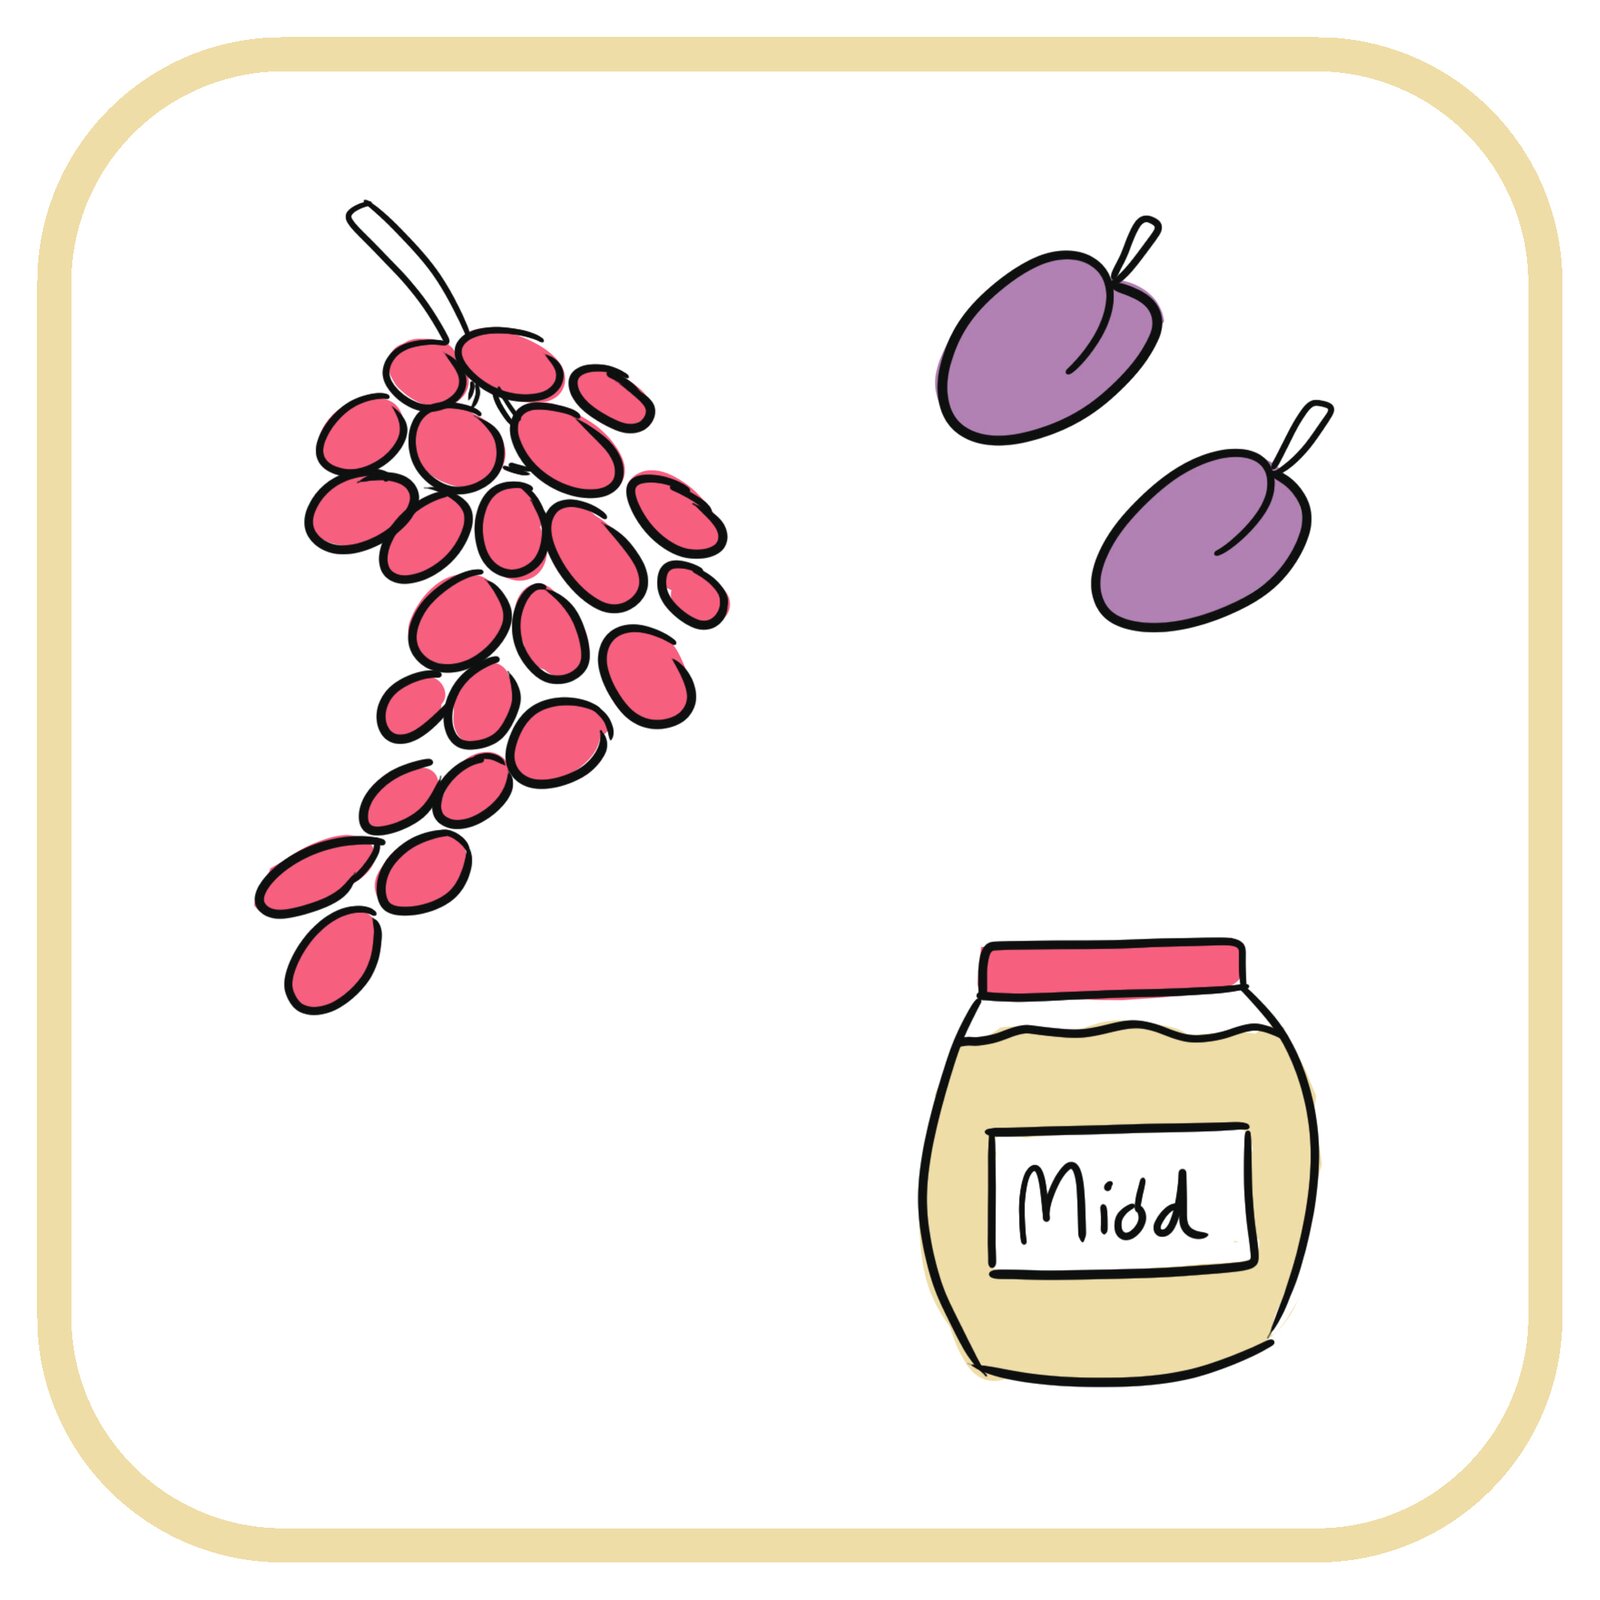 Od lewej: winogrona, śliwki, miód w słoiku.